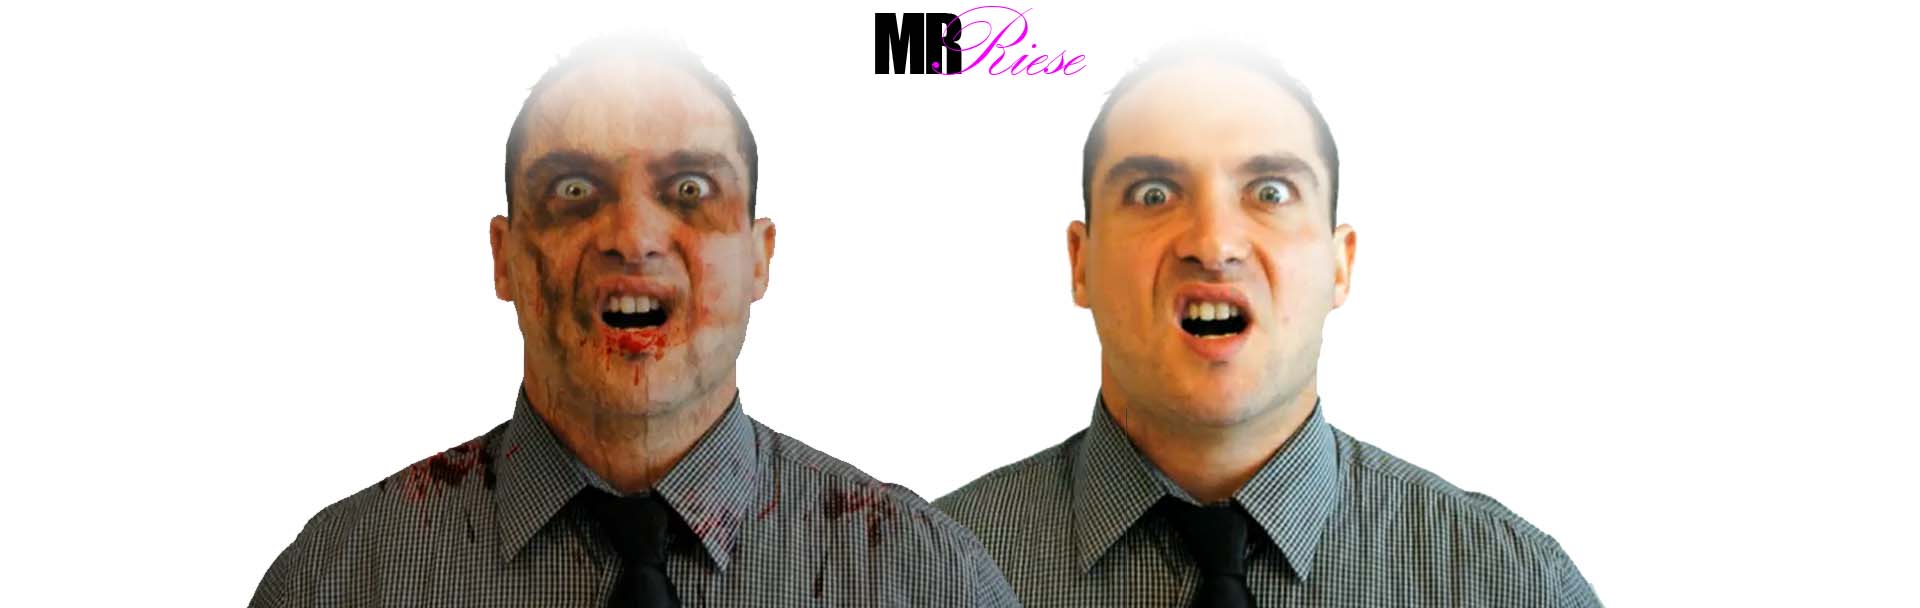 Zombie Portrait Photoshop Project | Mr. Riese - image